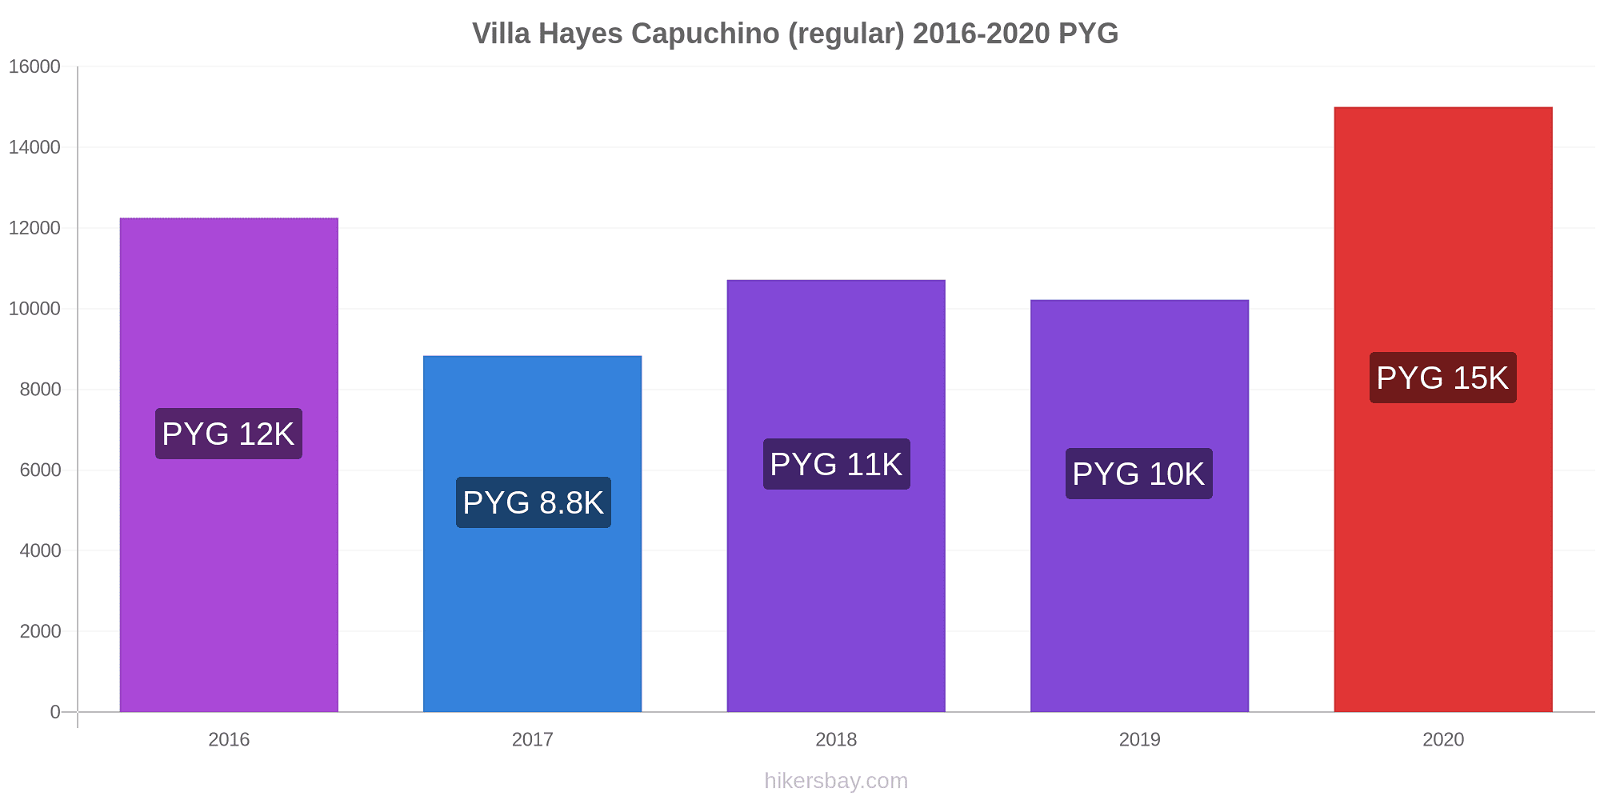 Villa Hayes cambios de precios Capuchino (regular) hikersbay.com